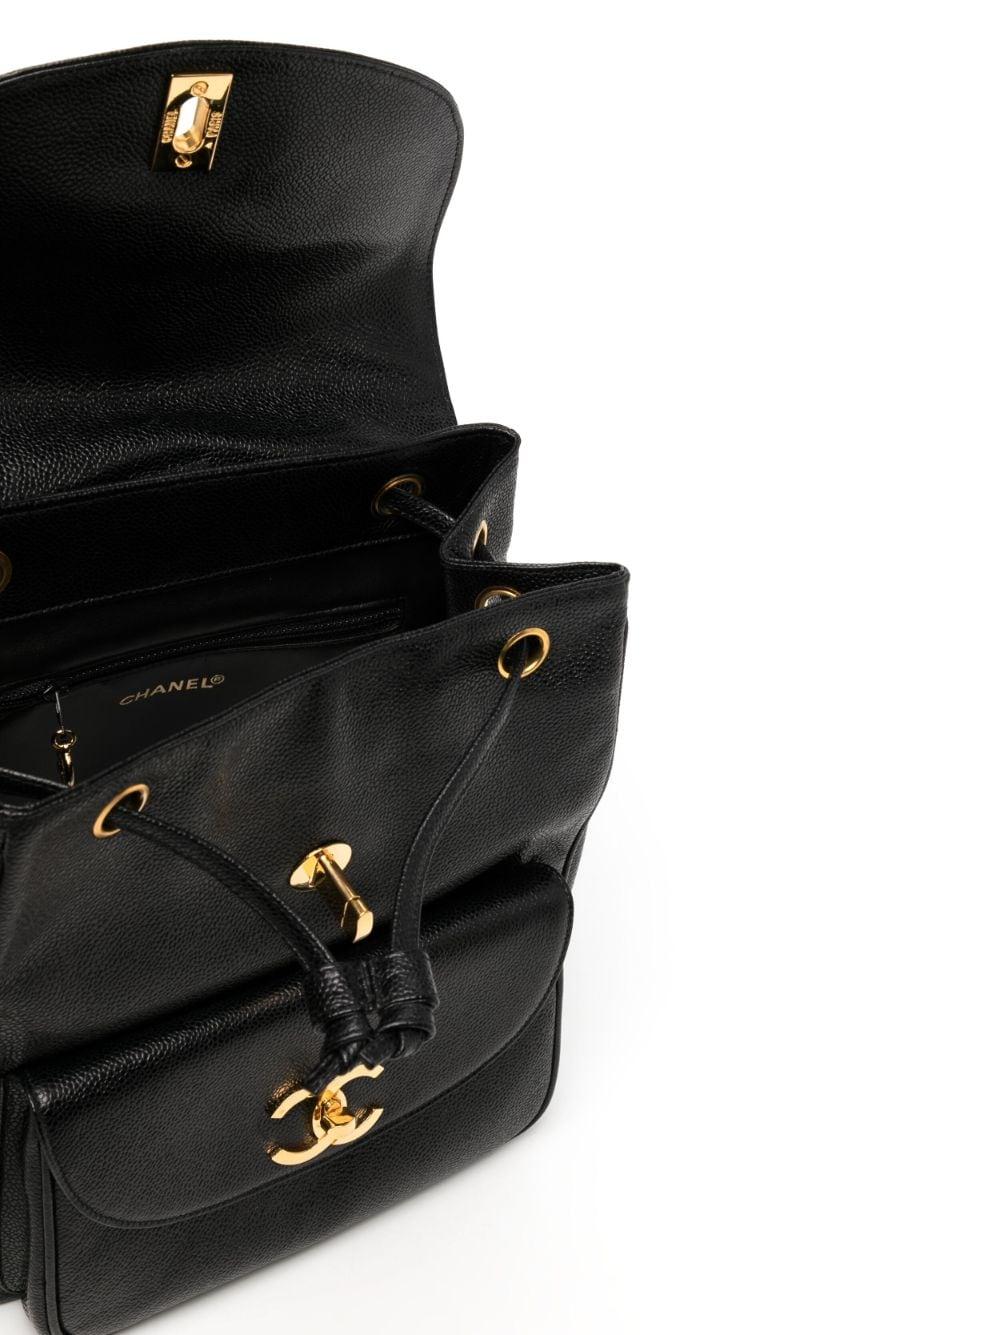 Chanel 1994 Vintage Caviar Black Leather Double Pocket Duma Backpack Bag For Sale 4